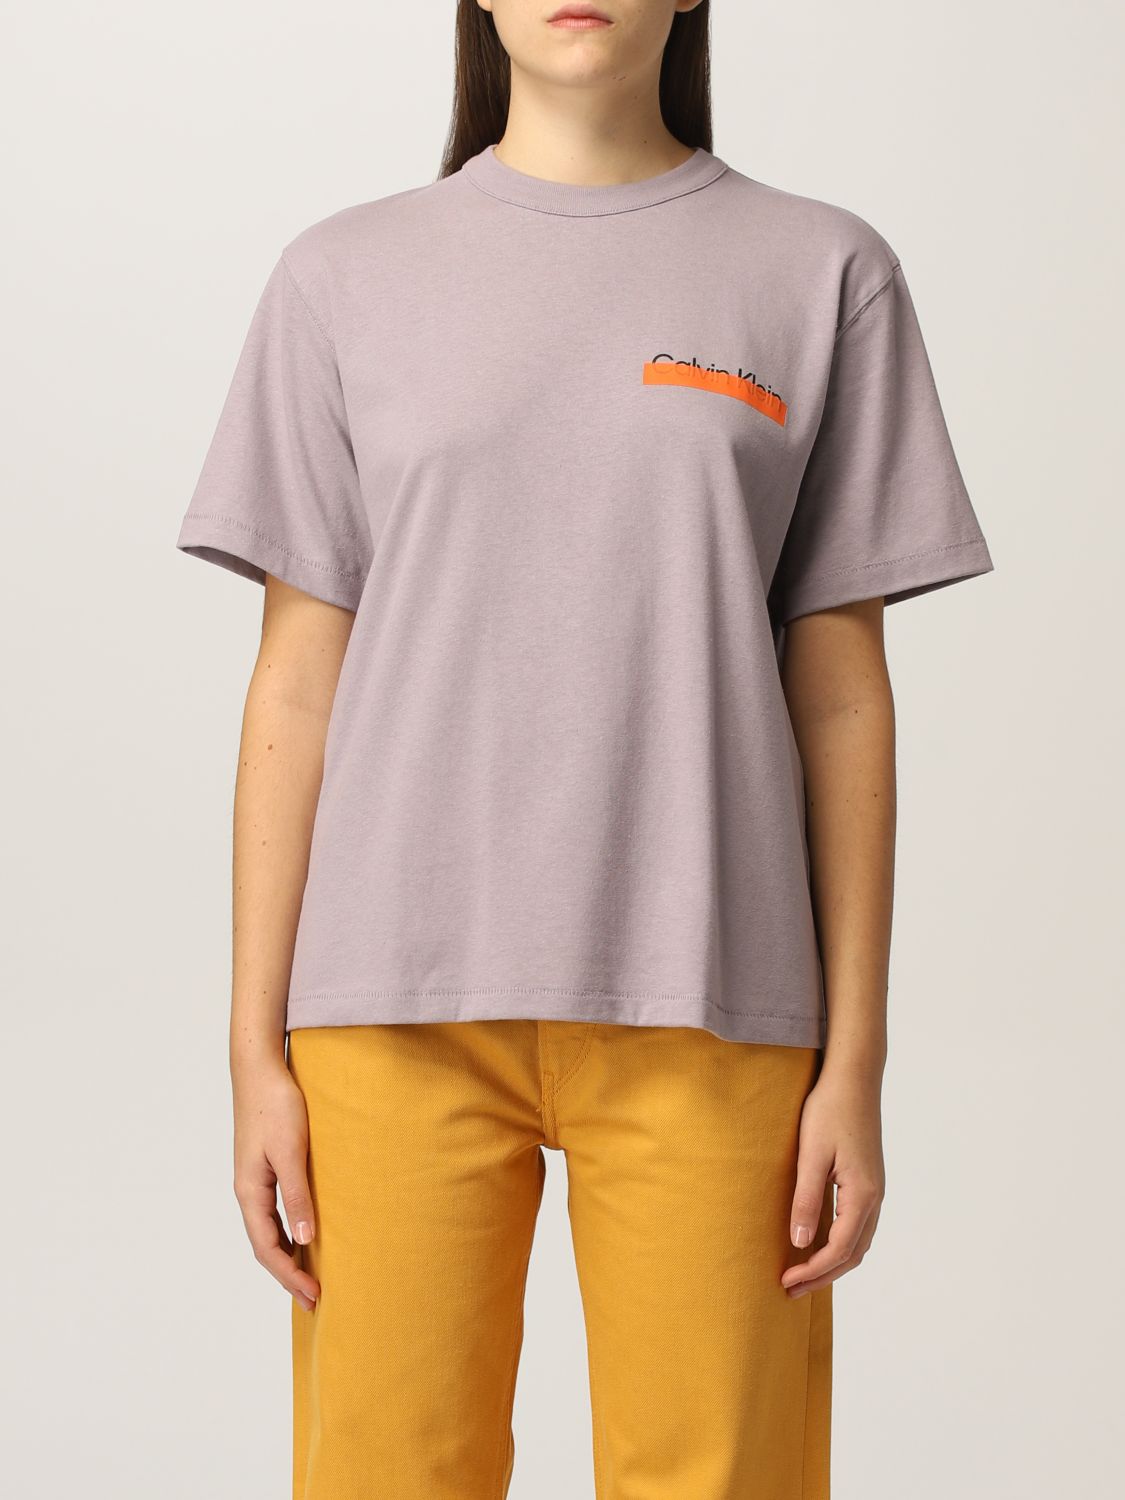 HERON PRESTON FOR CALVIN KLEIN: Orange  Heron Preston x Calvin Klein T- Shirt - Grey | Heron Preston For Calvin Klein t-shirt K20K203717PDD online  on 